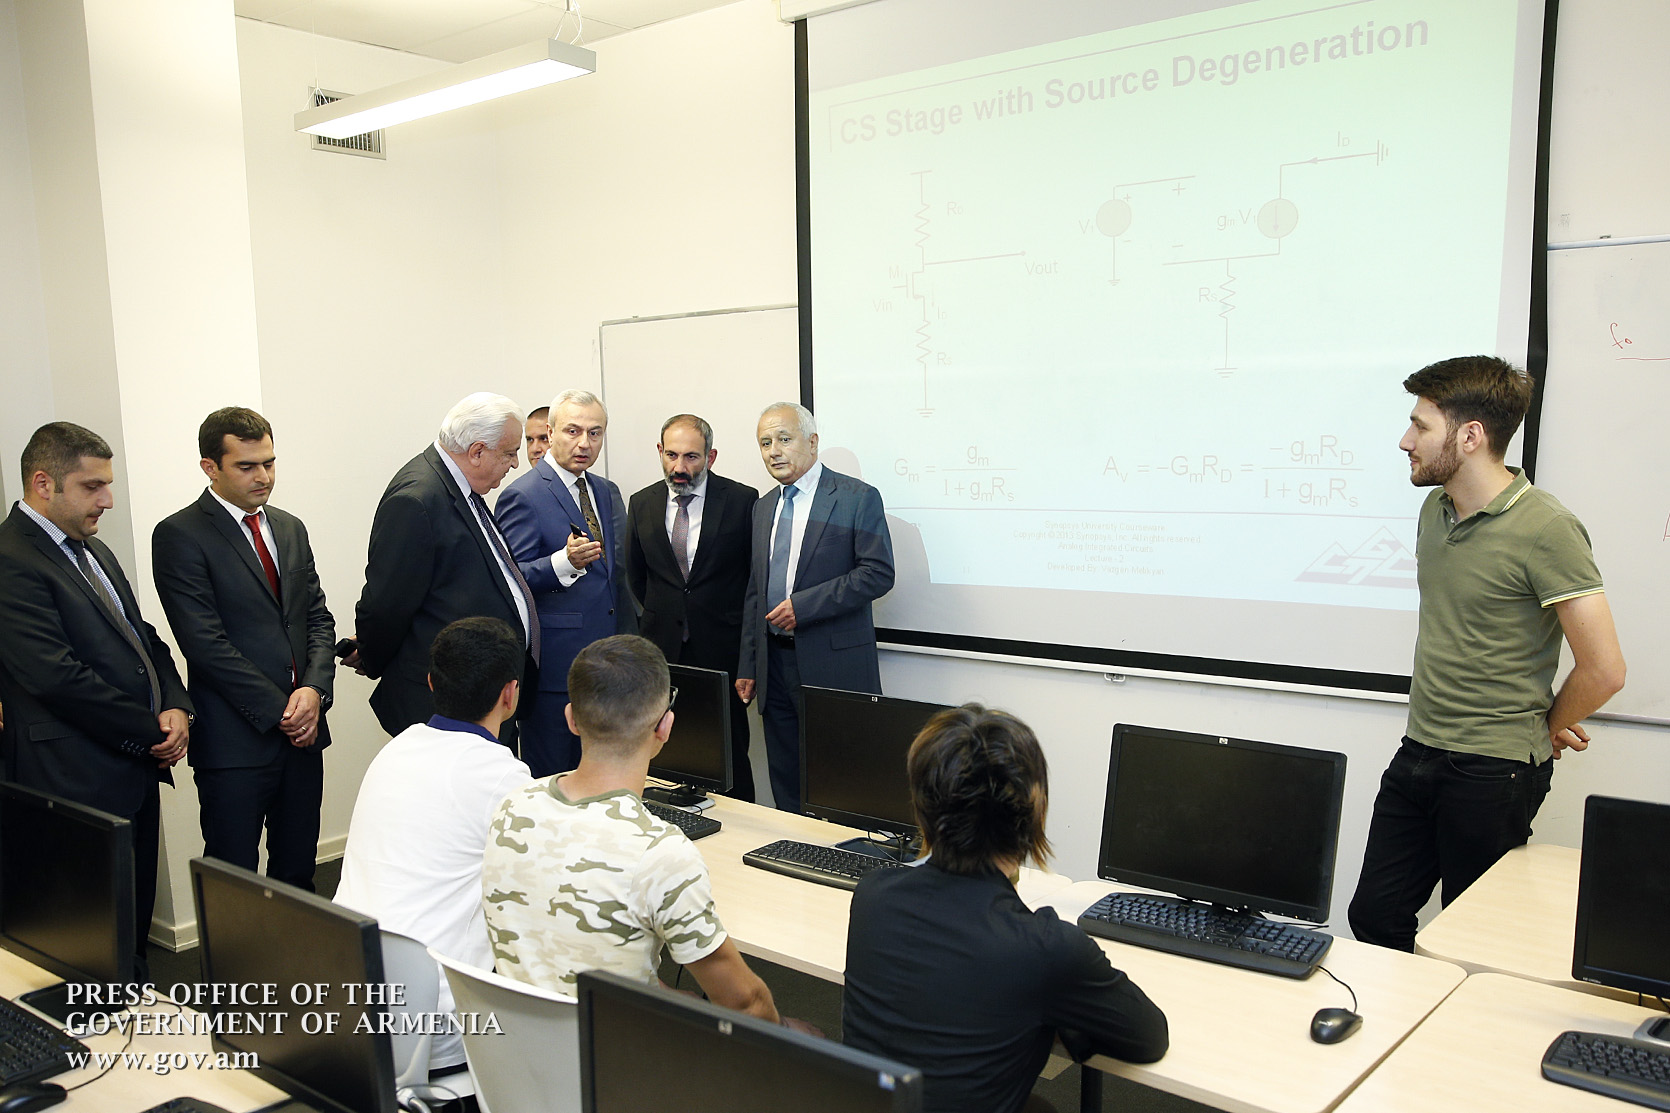 Премьер-министр ознакомился с деятельностью компании “Синопсис Армения” и коснулся решения о накопительной пенсионной системе